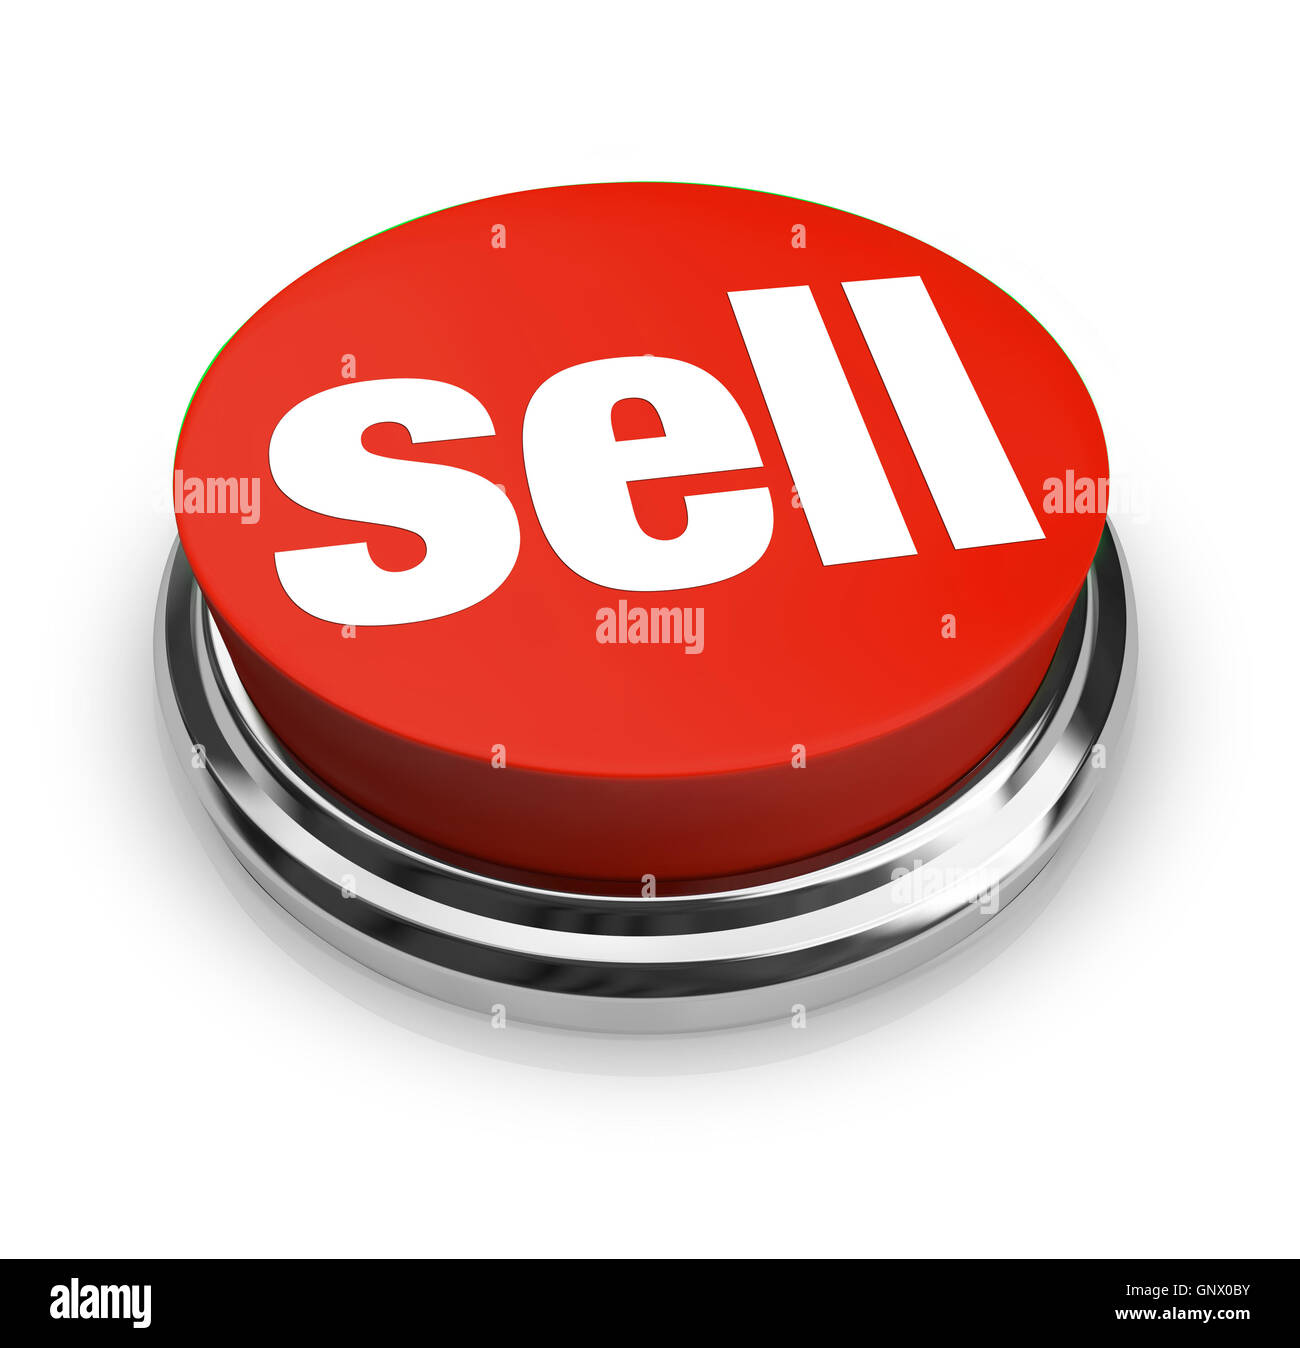 Vendre Word sur le bouton rond rouge vendeur propose à la vente de marchandises Banque D'Images